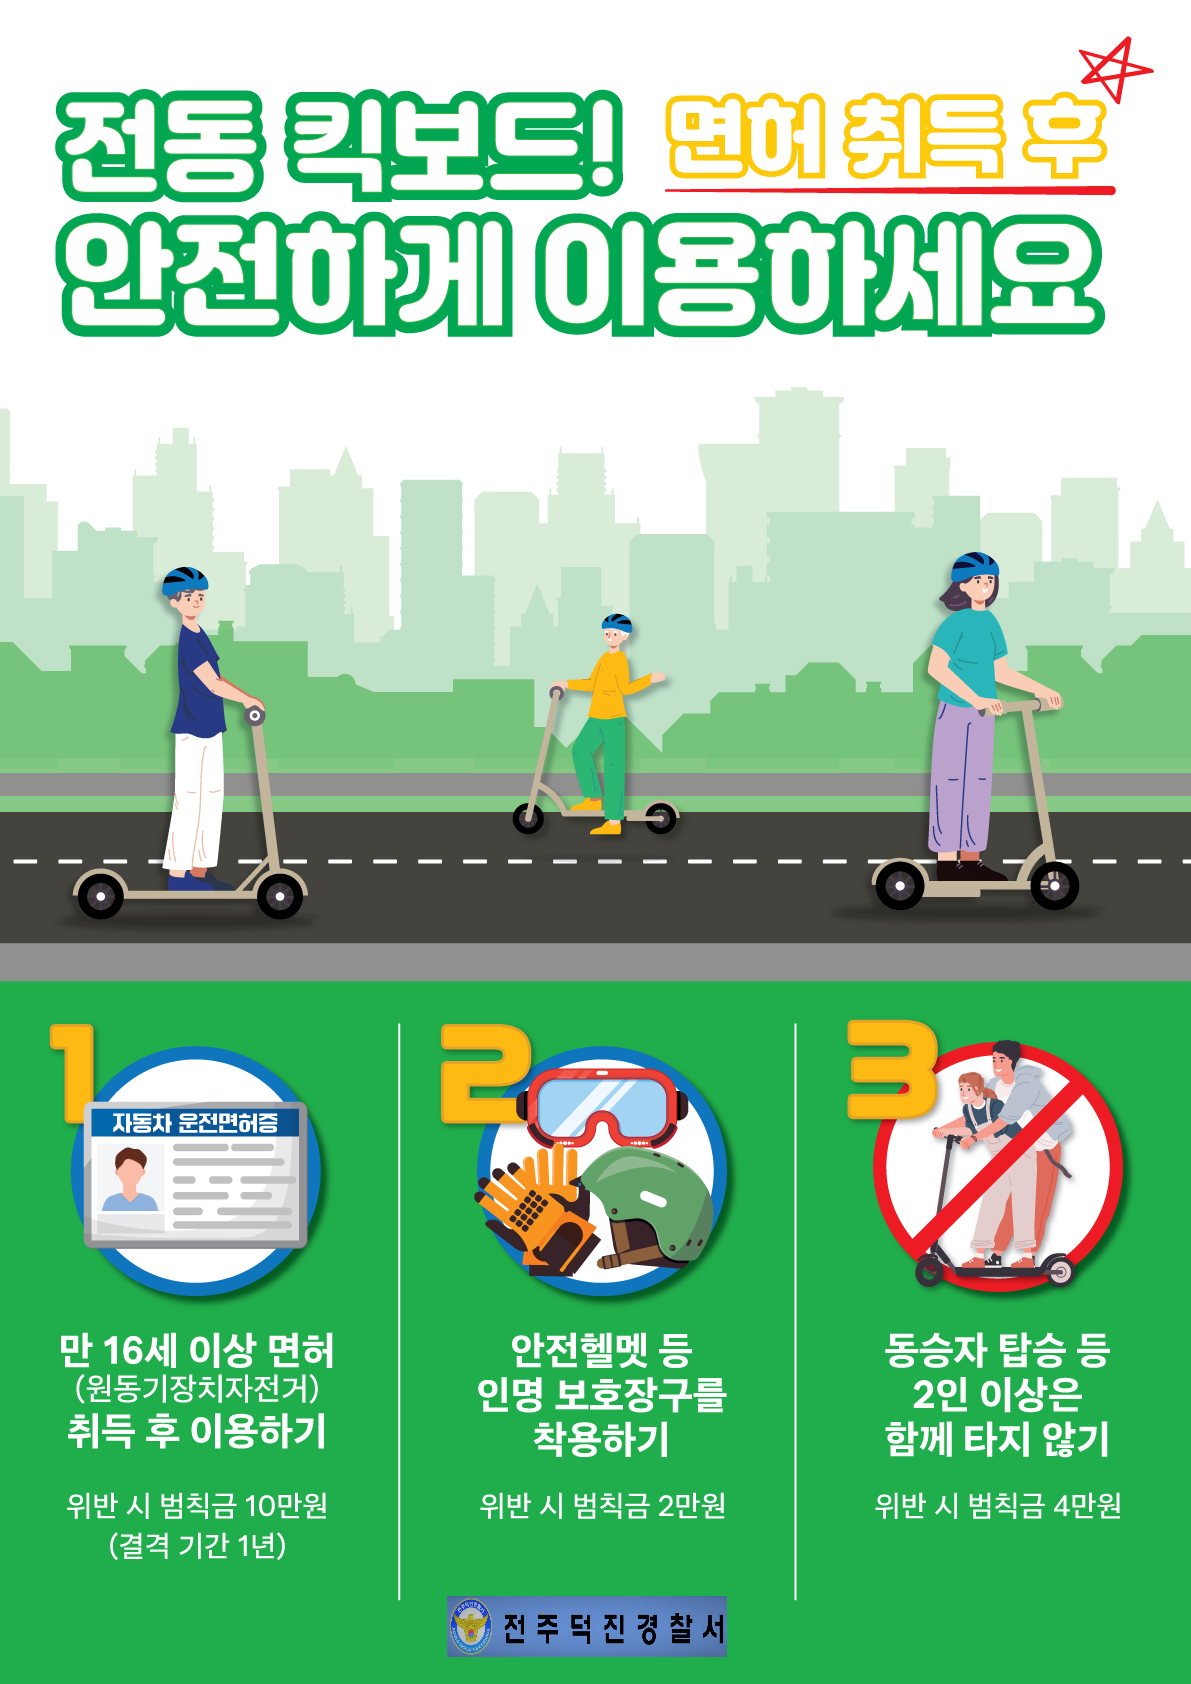 전주덕진경찰서 경비교통과_개인형 이동장치 포스터-1